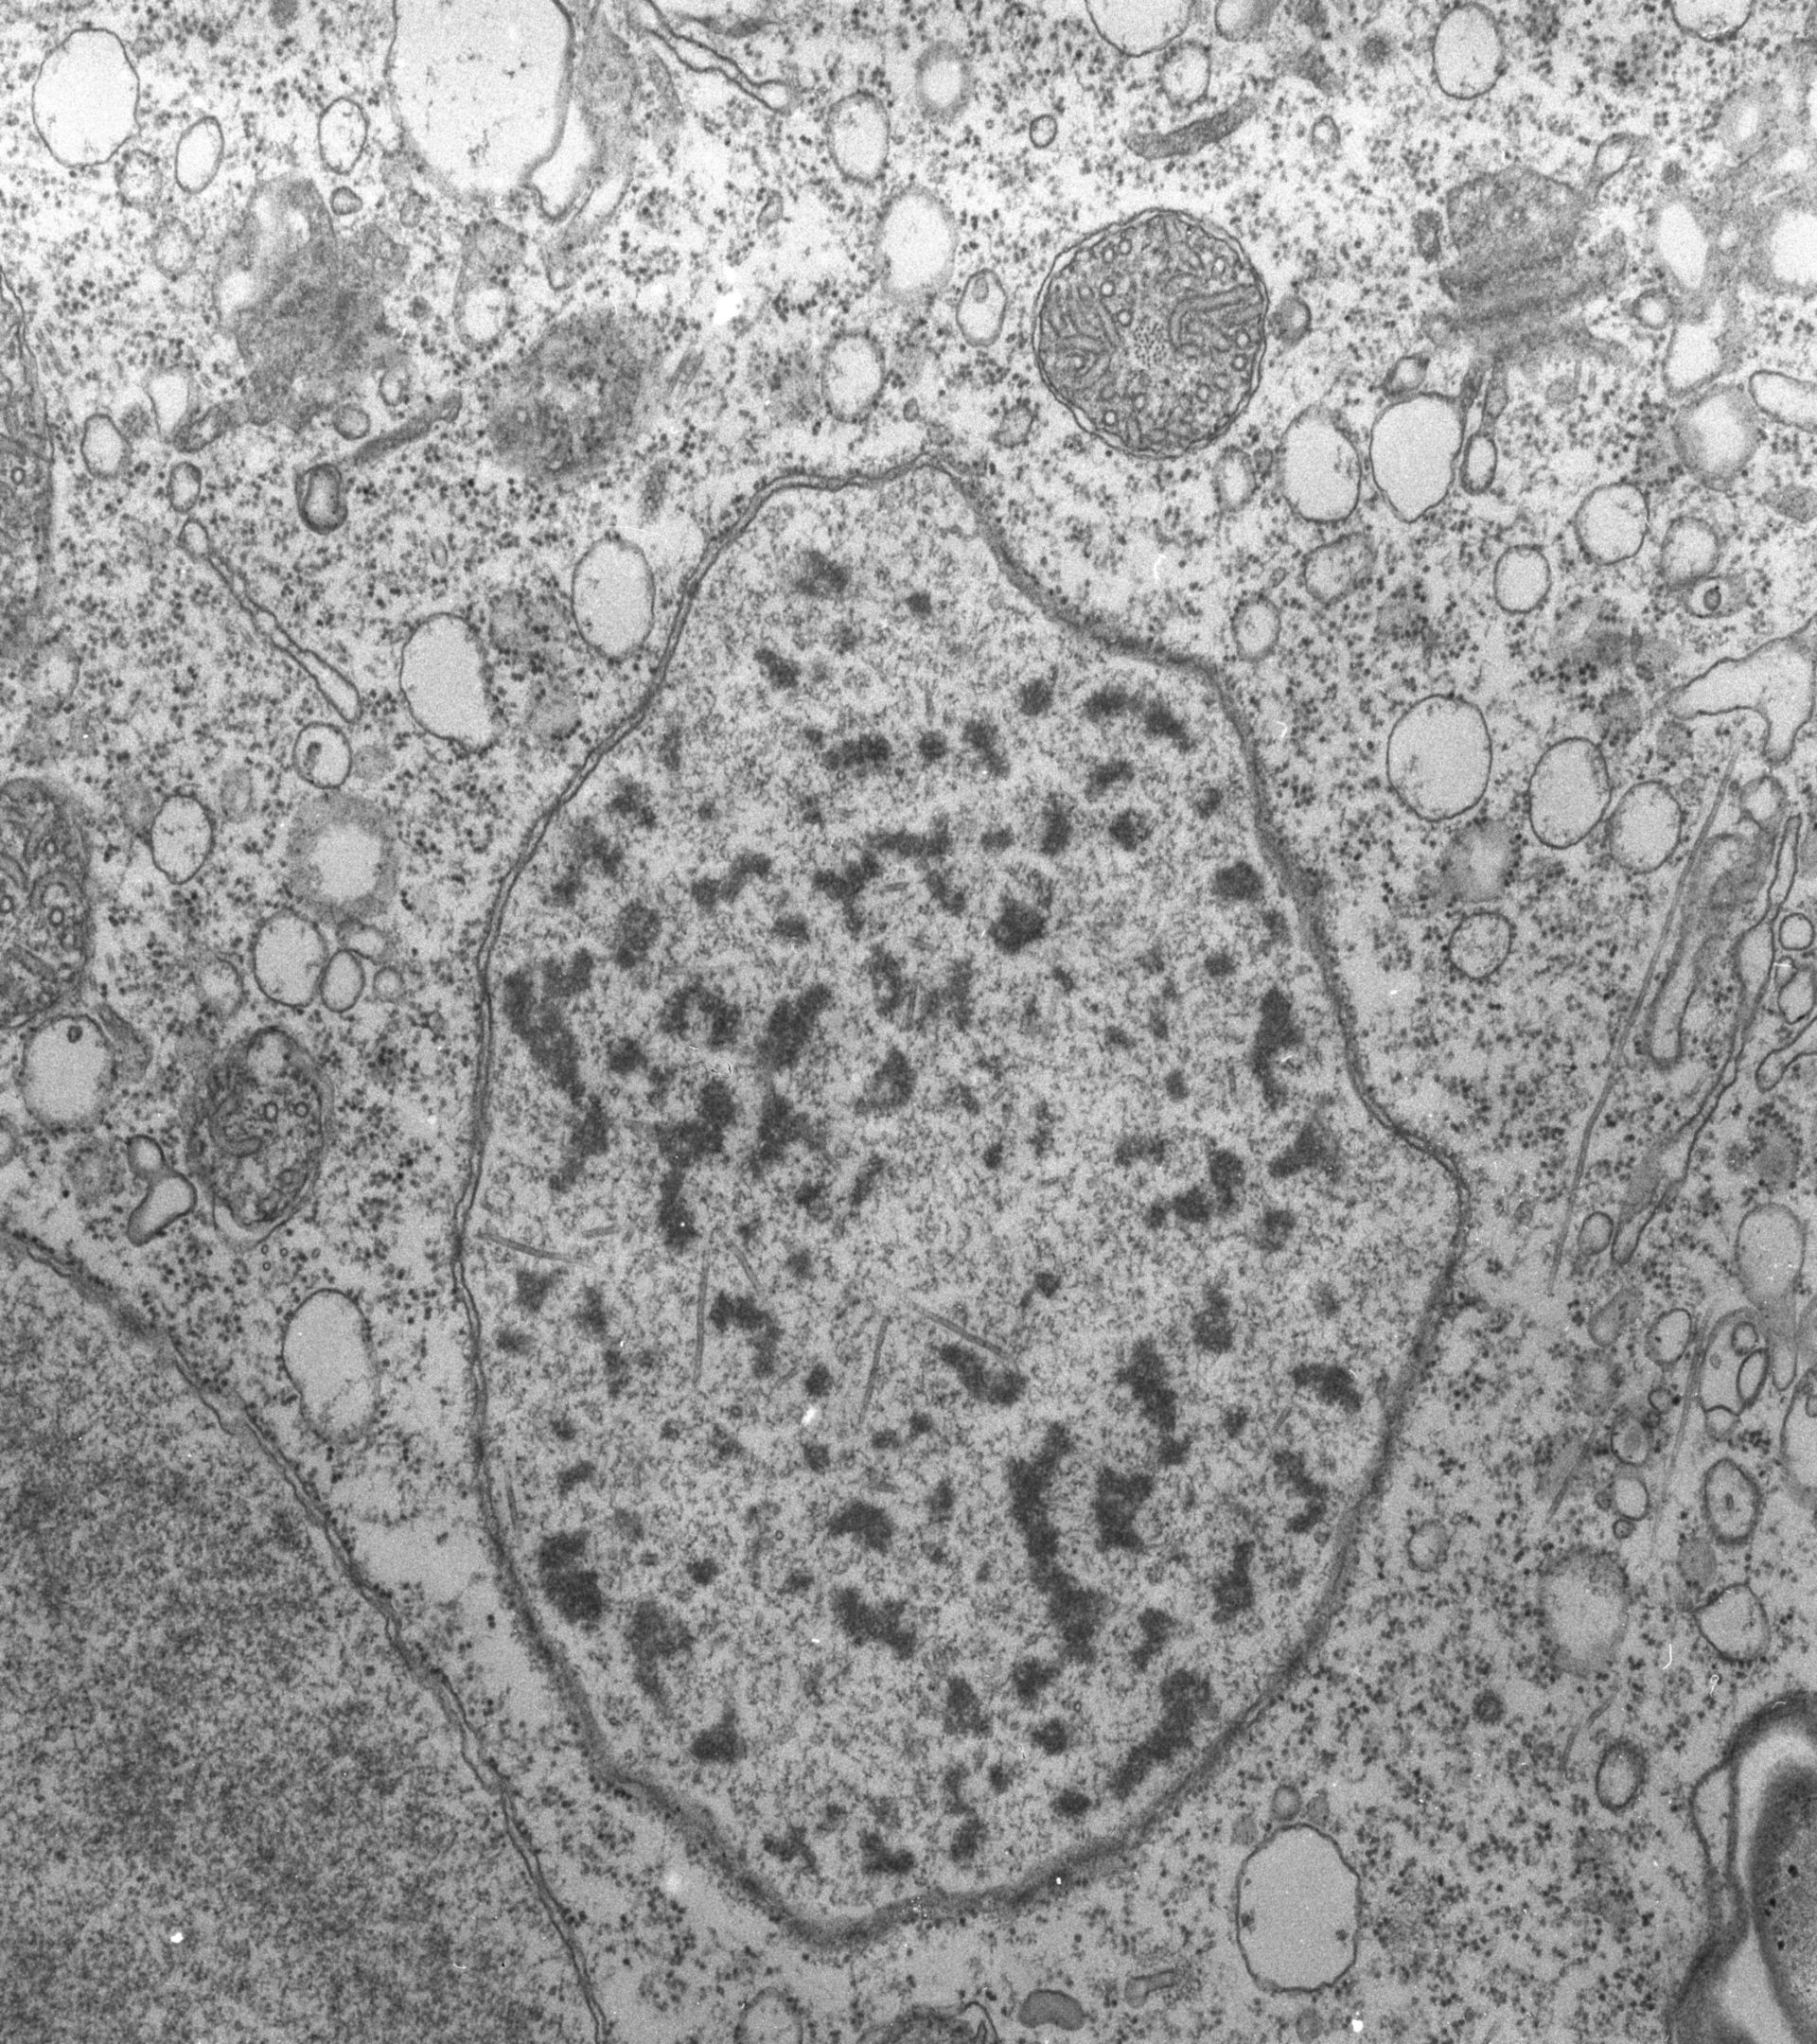 Vorticella convallaria (Heterochromatin) - CIL:39452